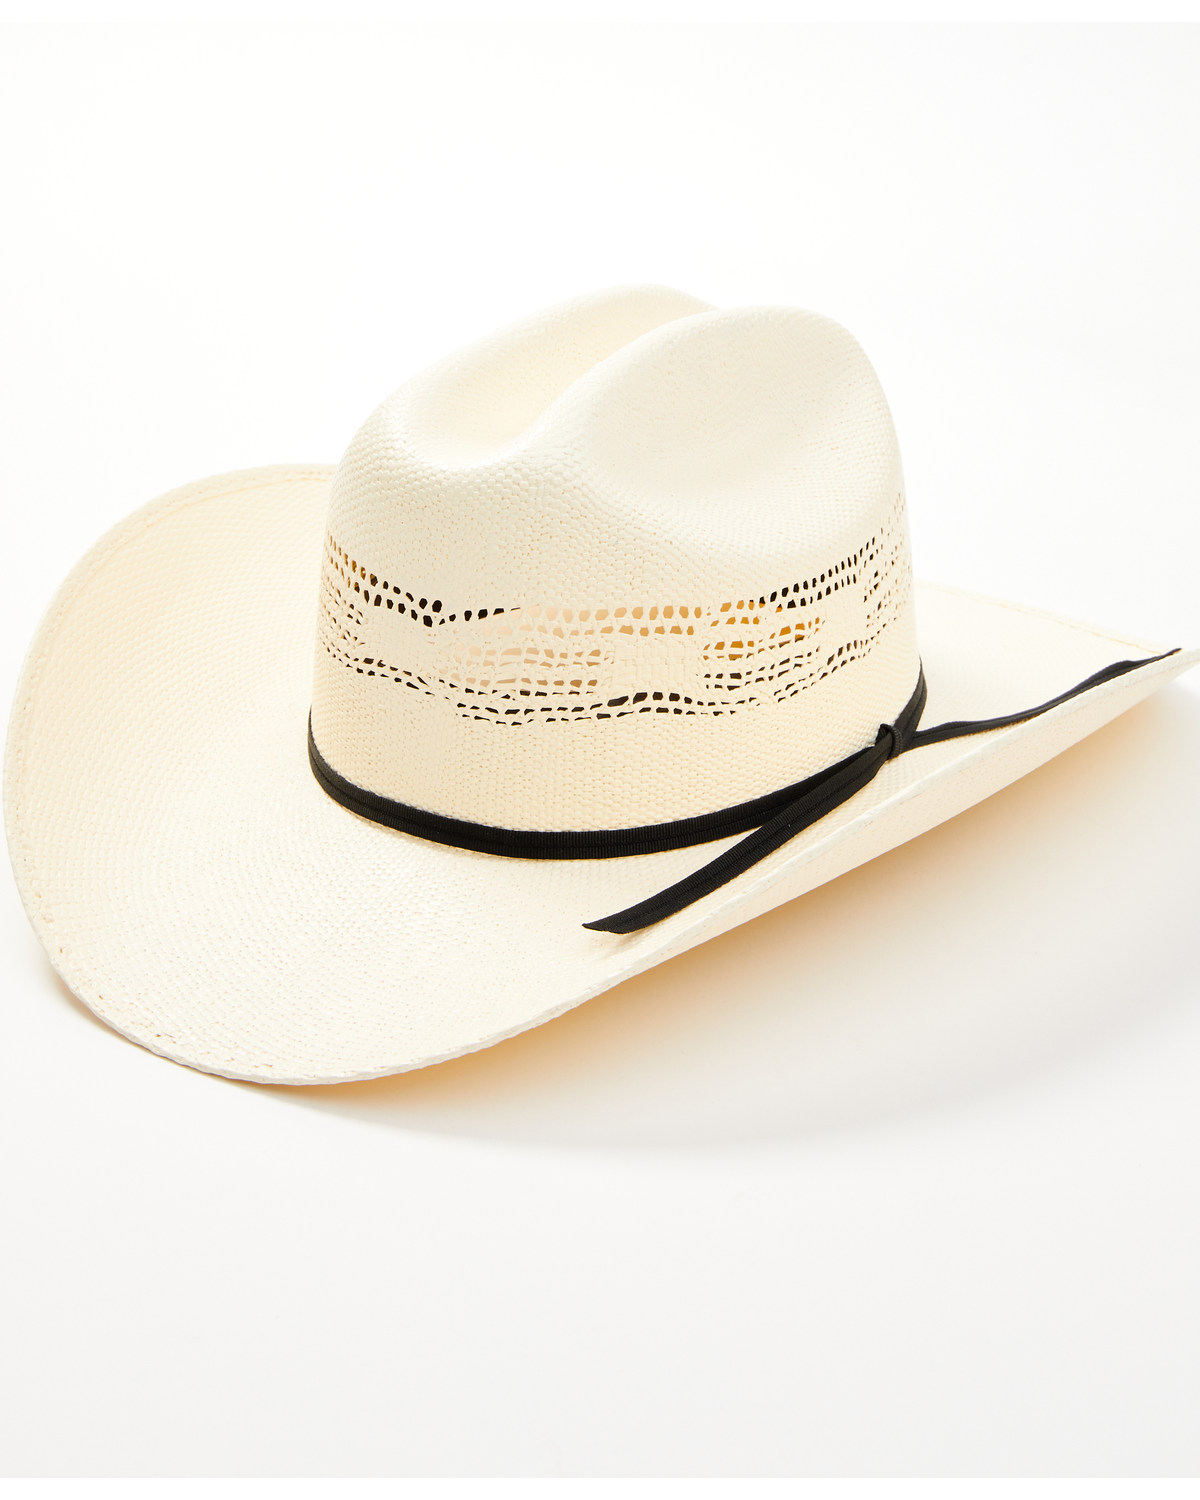 Cody James Saddlebred Straw Cowboy Hat